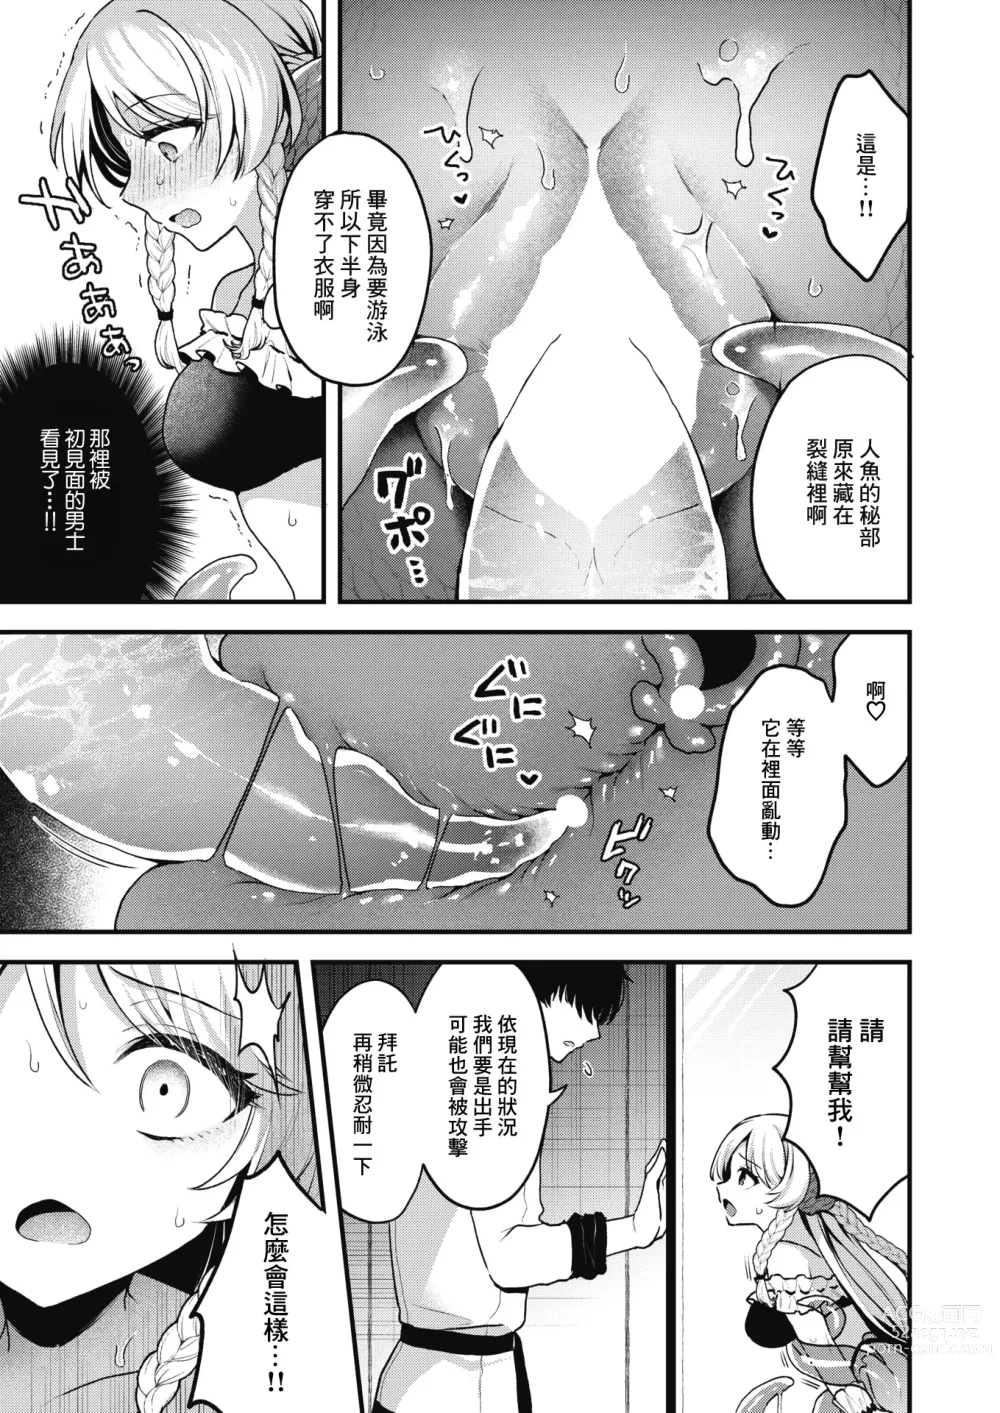 Page 10 of manga 雖然這裡沒有王子大人